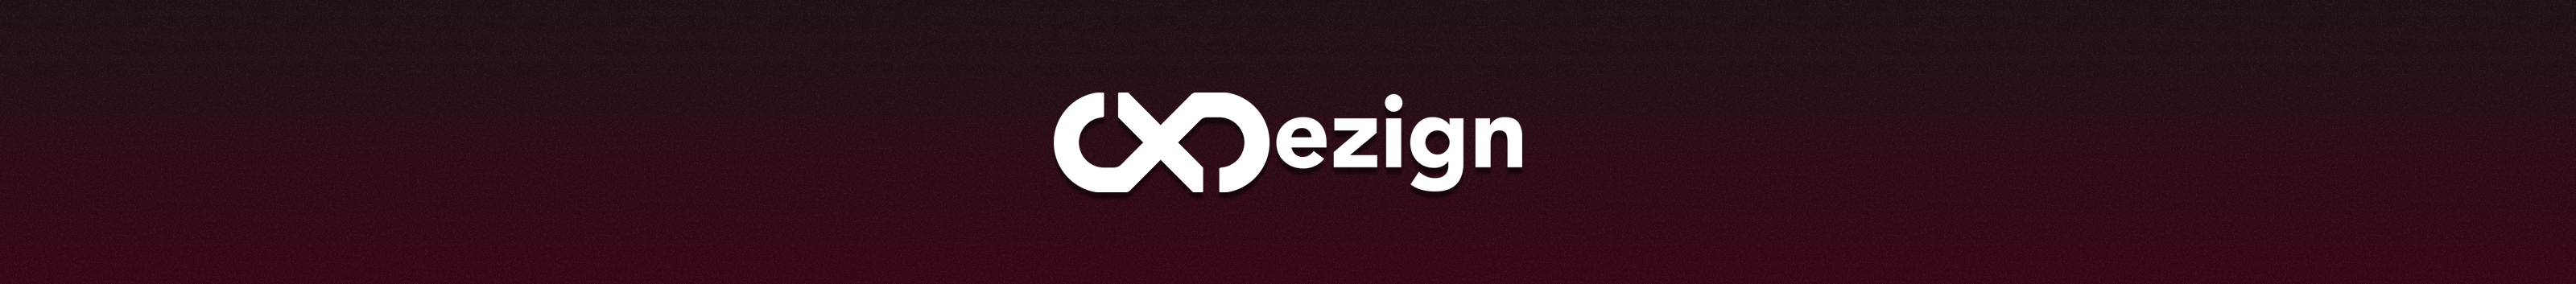 CX Dezign's profile banner